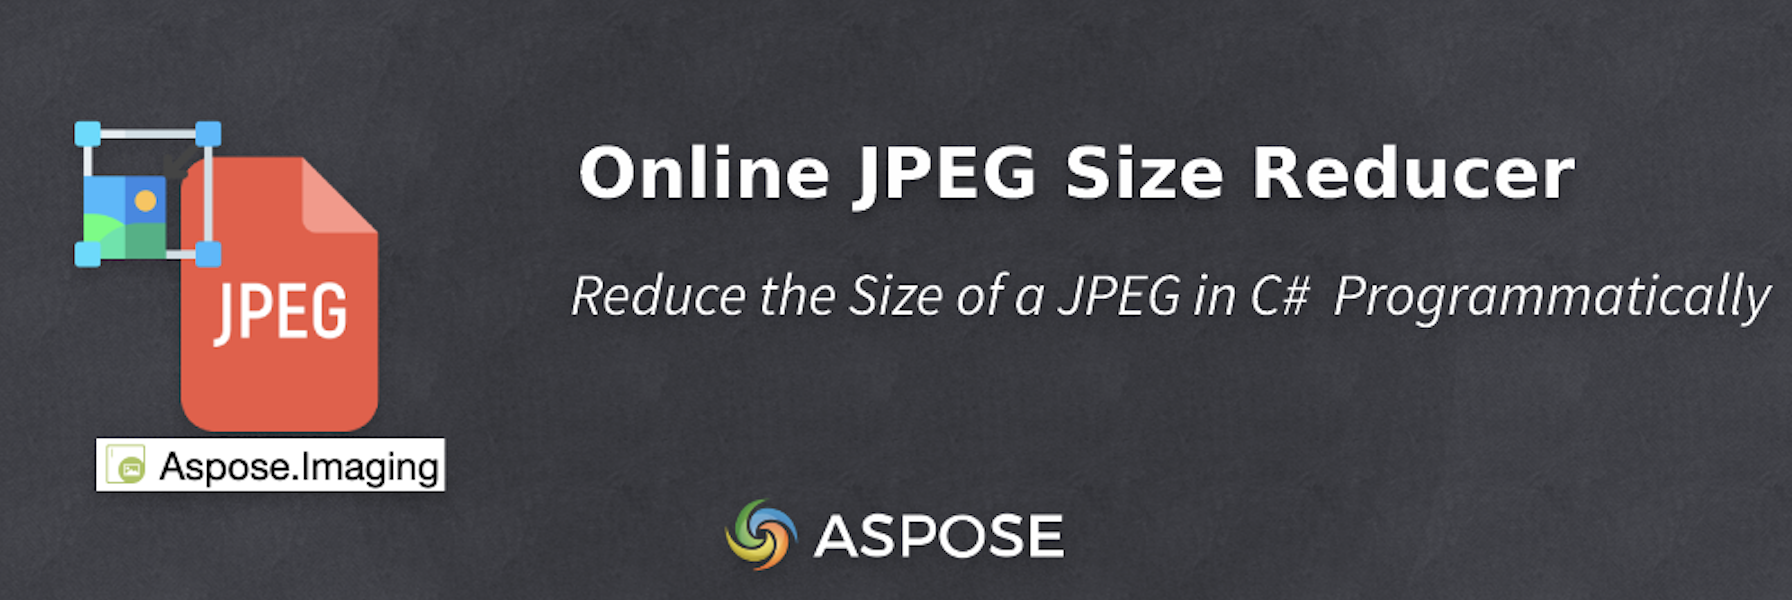 Giảm kích thước của JPEG trong C# - Trình giảm kích thước JPEG trực tuyến